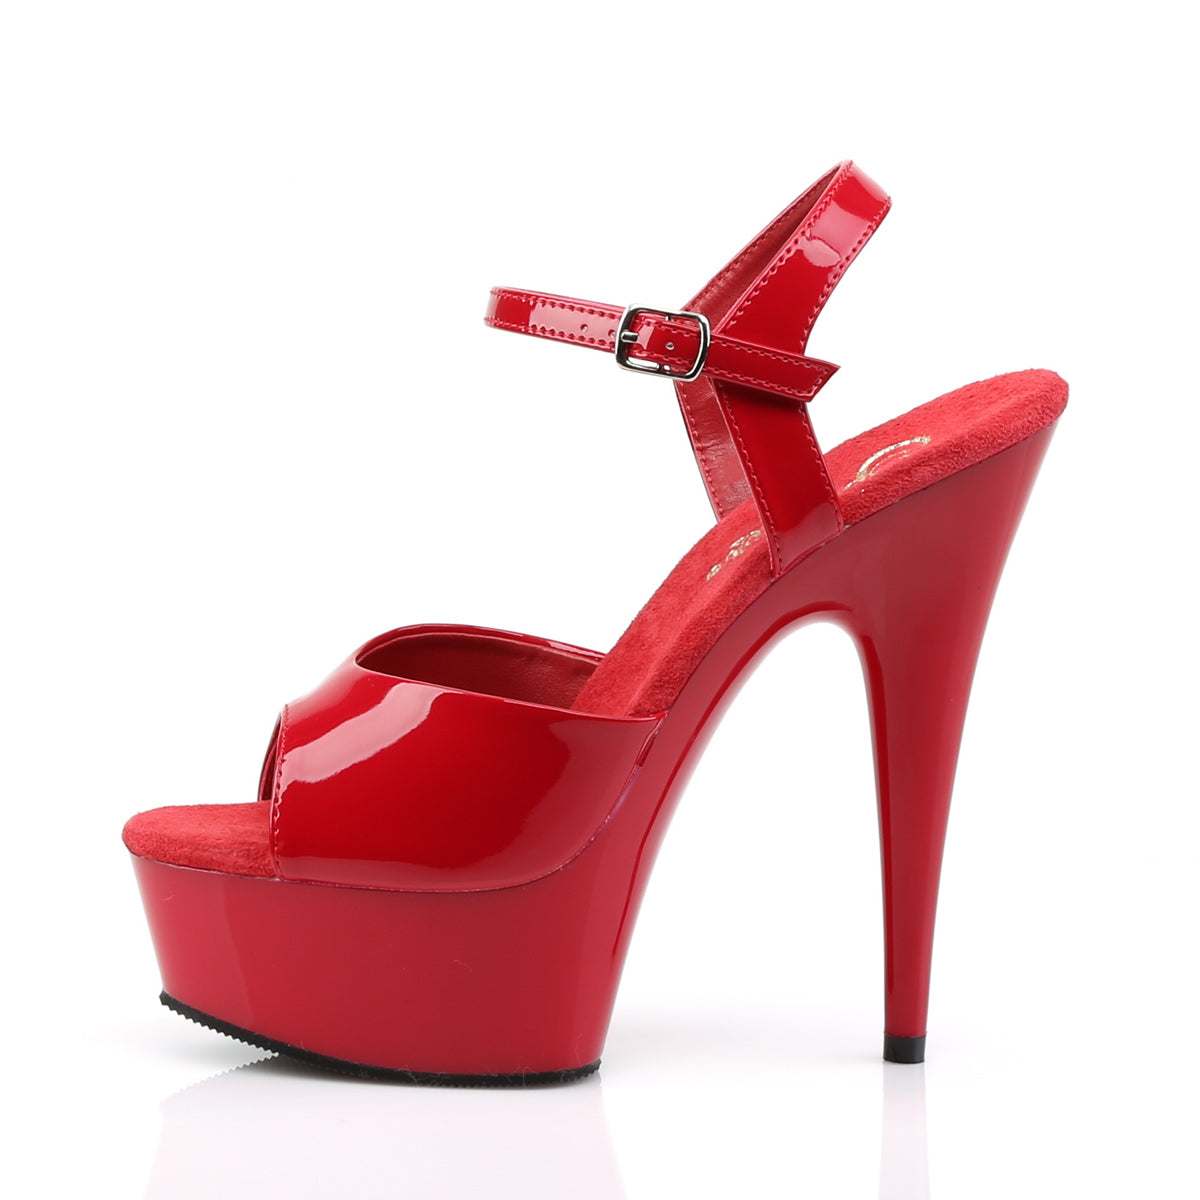 Pleaser Sandali da donna DELIGHT-609 Pat / rosso rosso / rosso